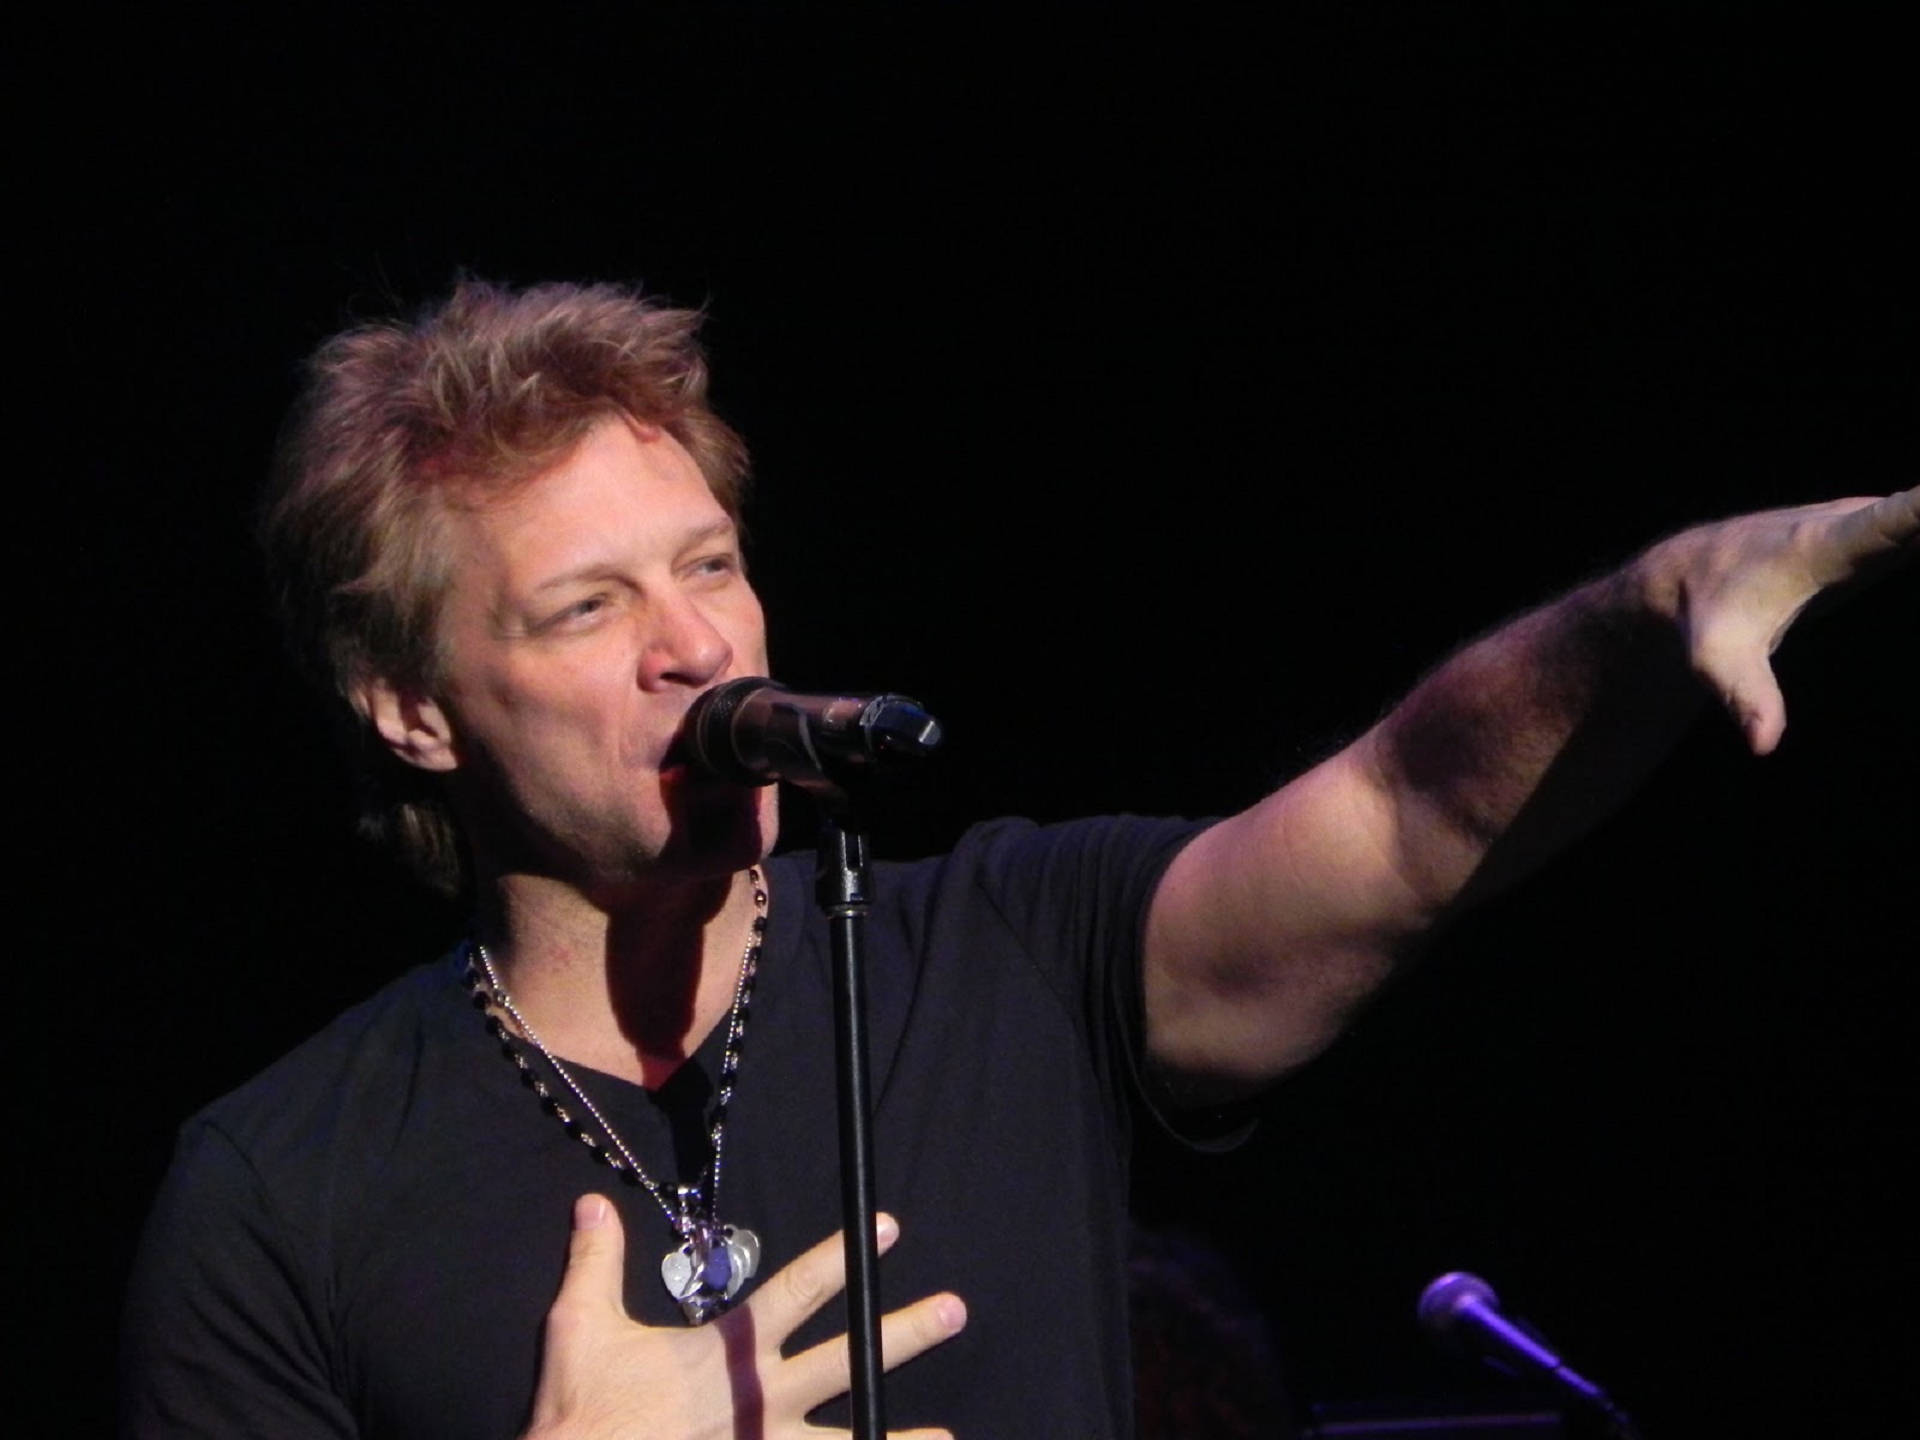 Cantanteestadounidense Jon Bon Jovi Concierto En Denver 2013 Fondo de pantalla